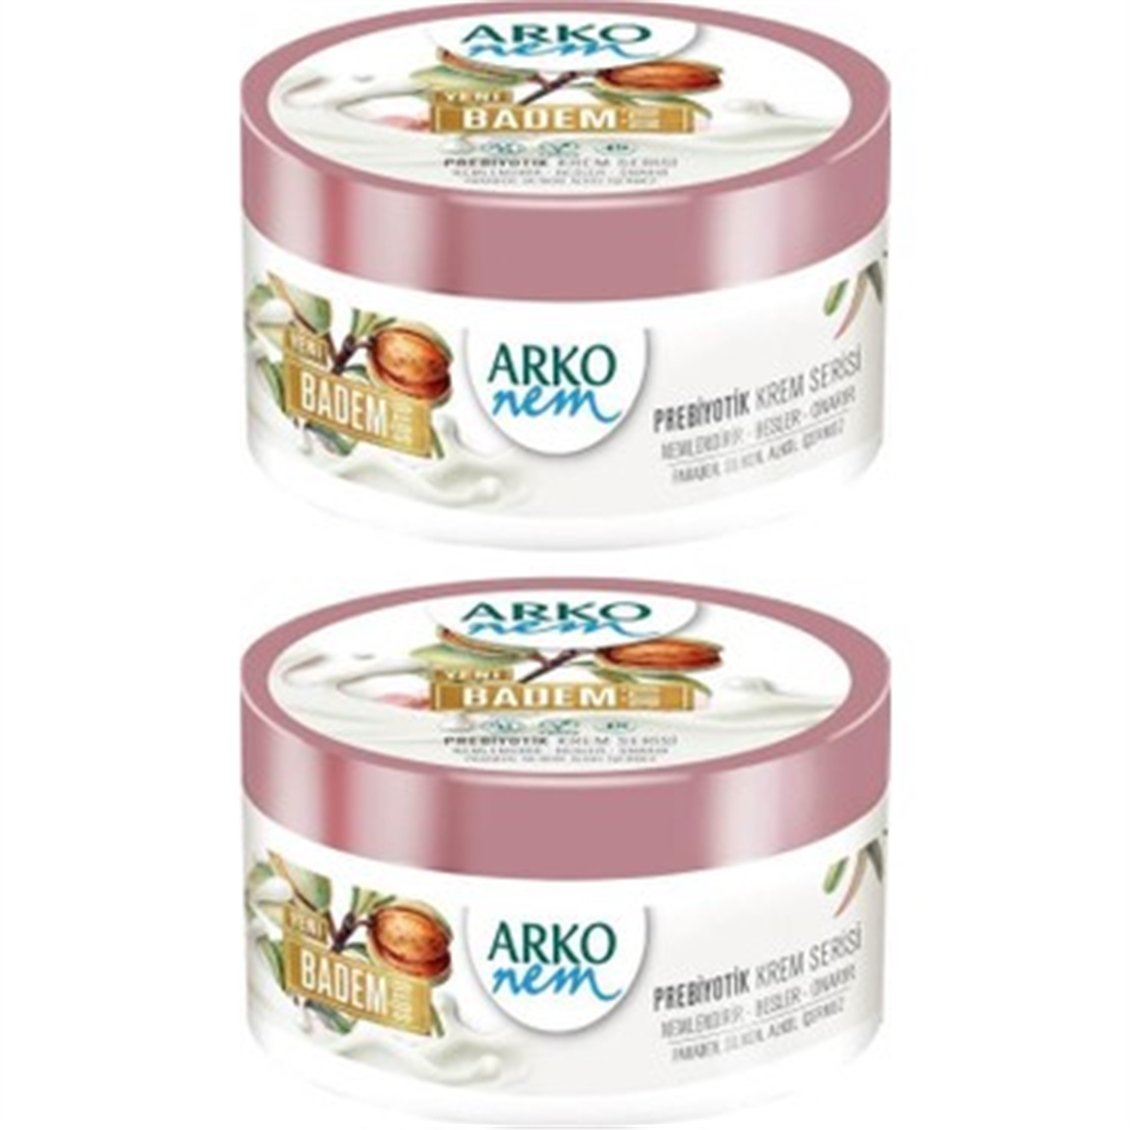 Arko Krem Prebiyotik Badem Yağı 250+250 ml - Onur Market